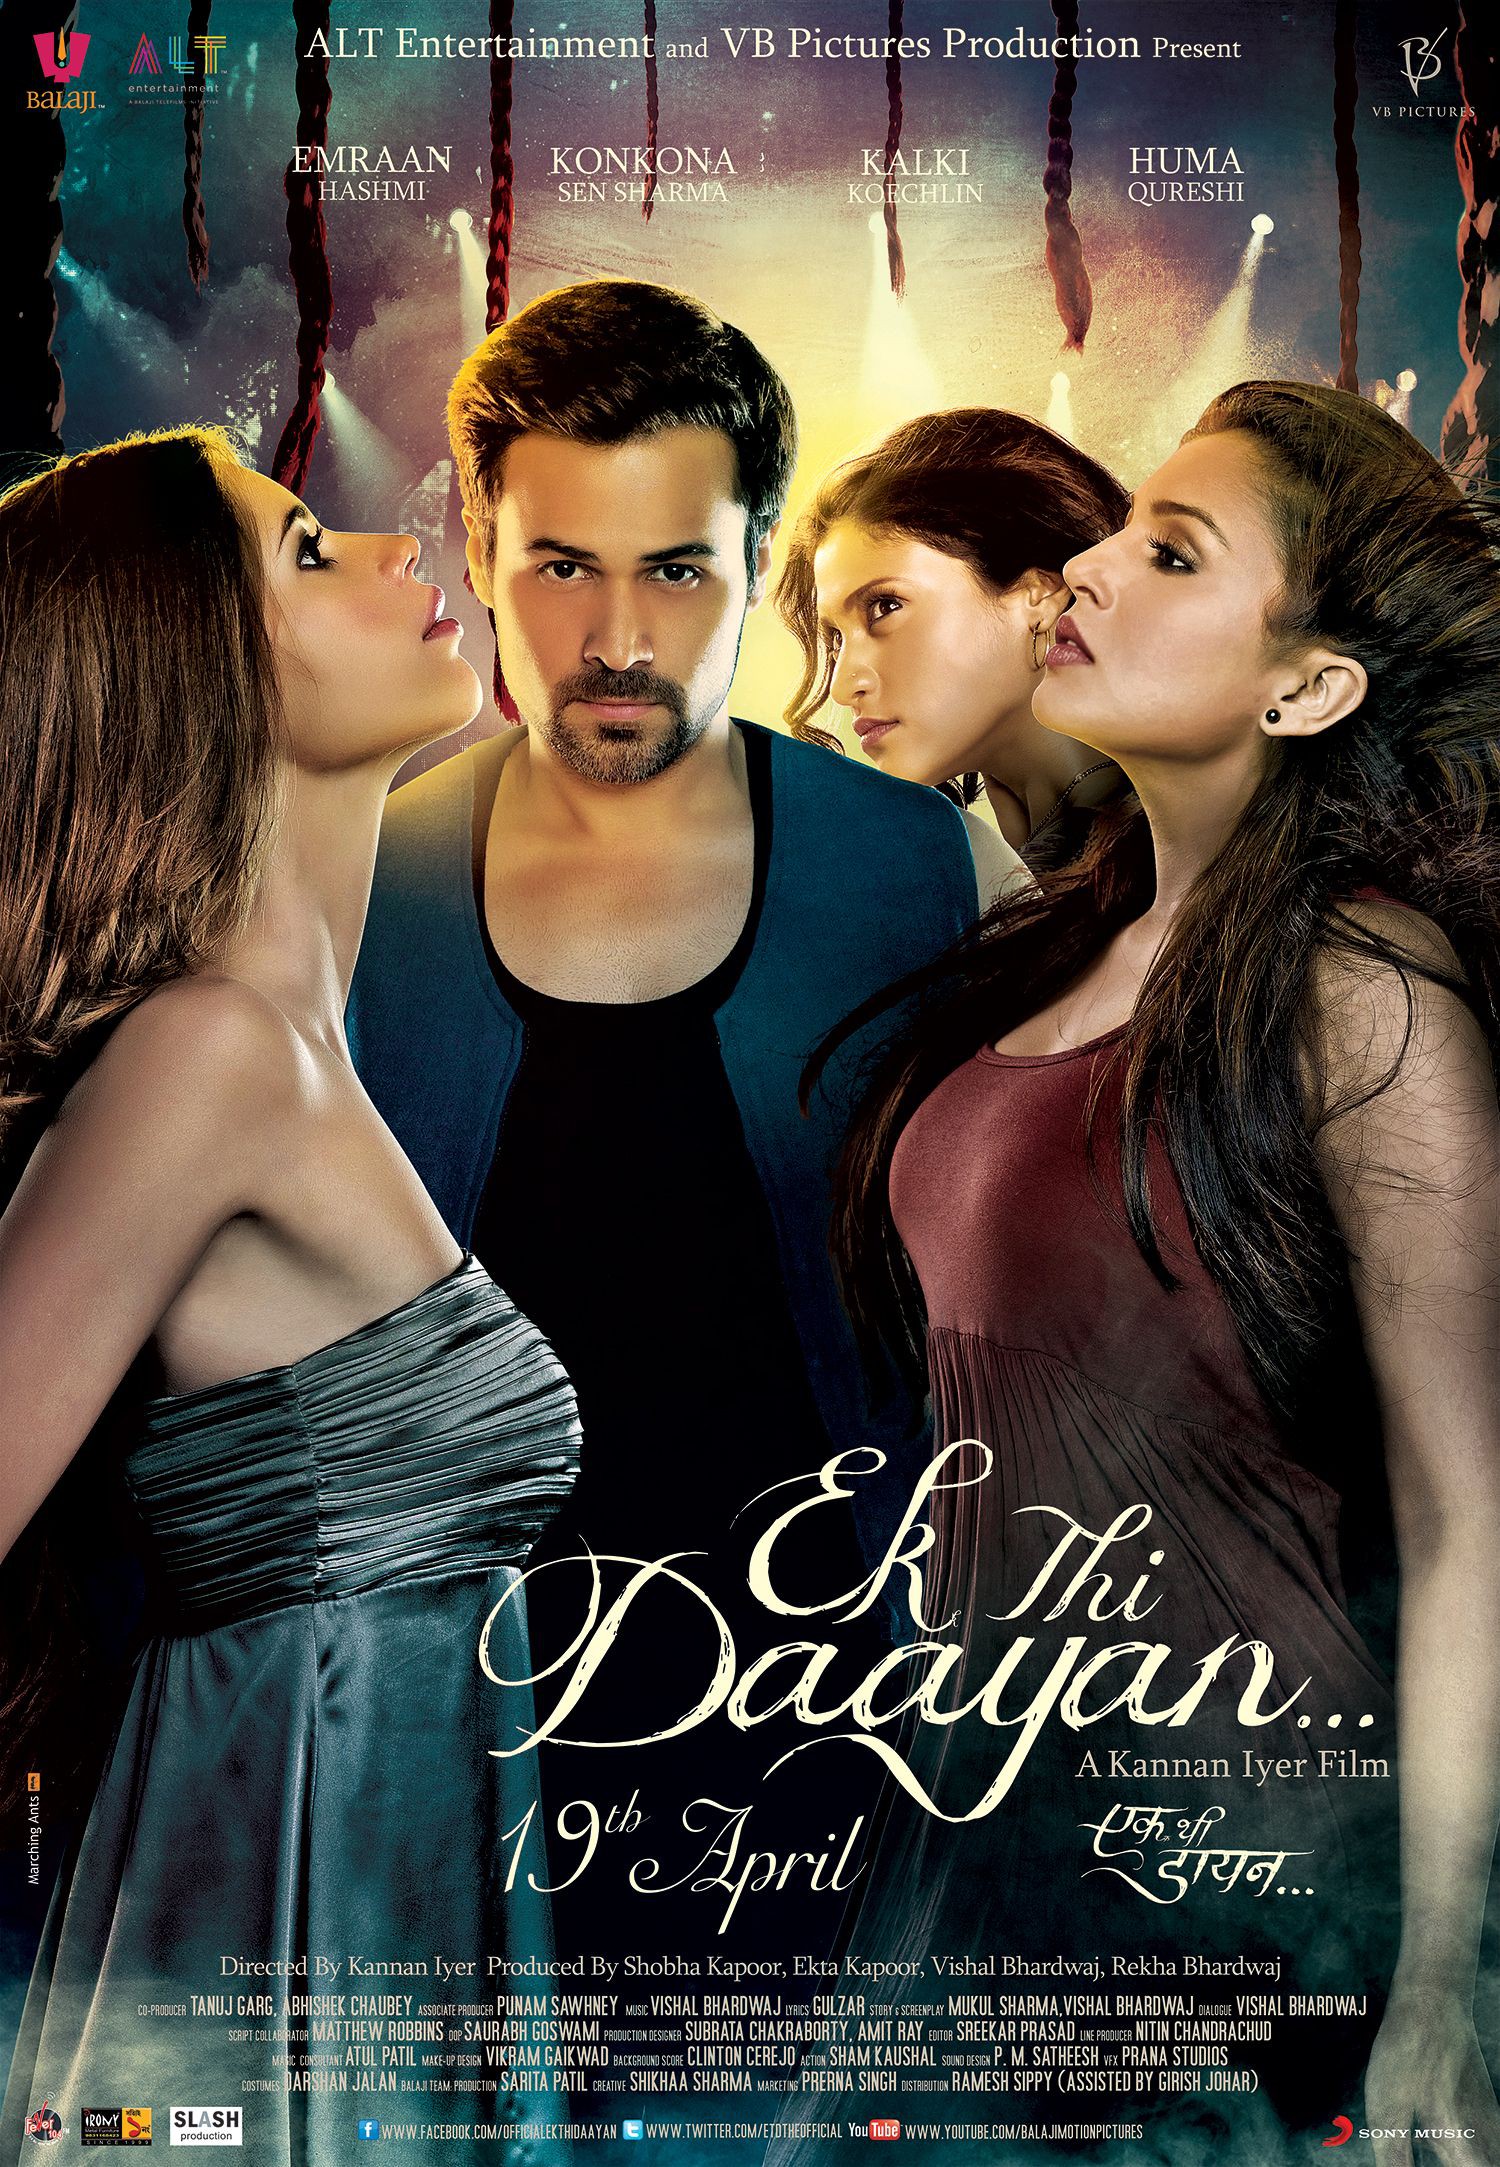 Mega Sized Movie Poster Image for Ek Thi Daayan (#4 of 4)